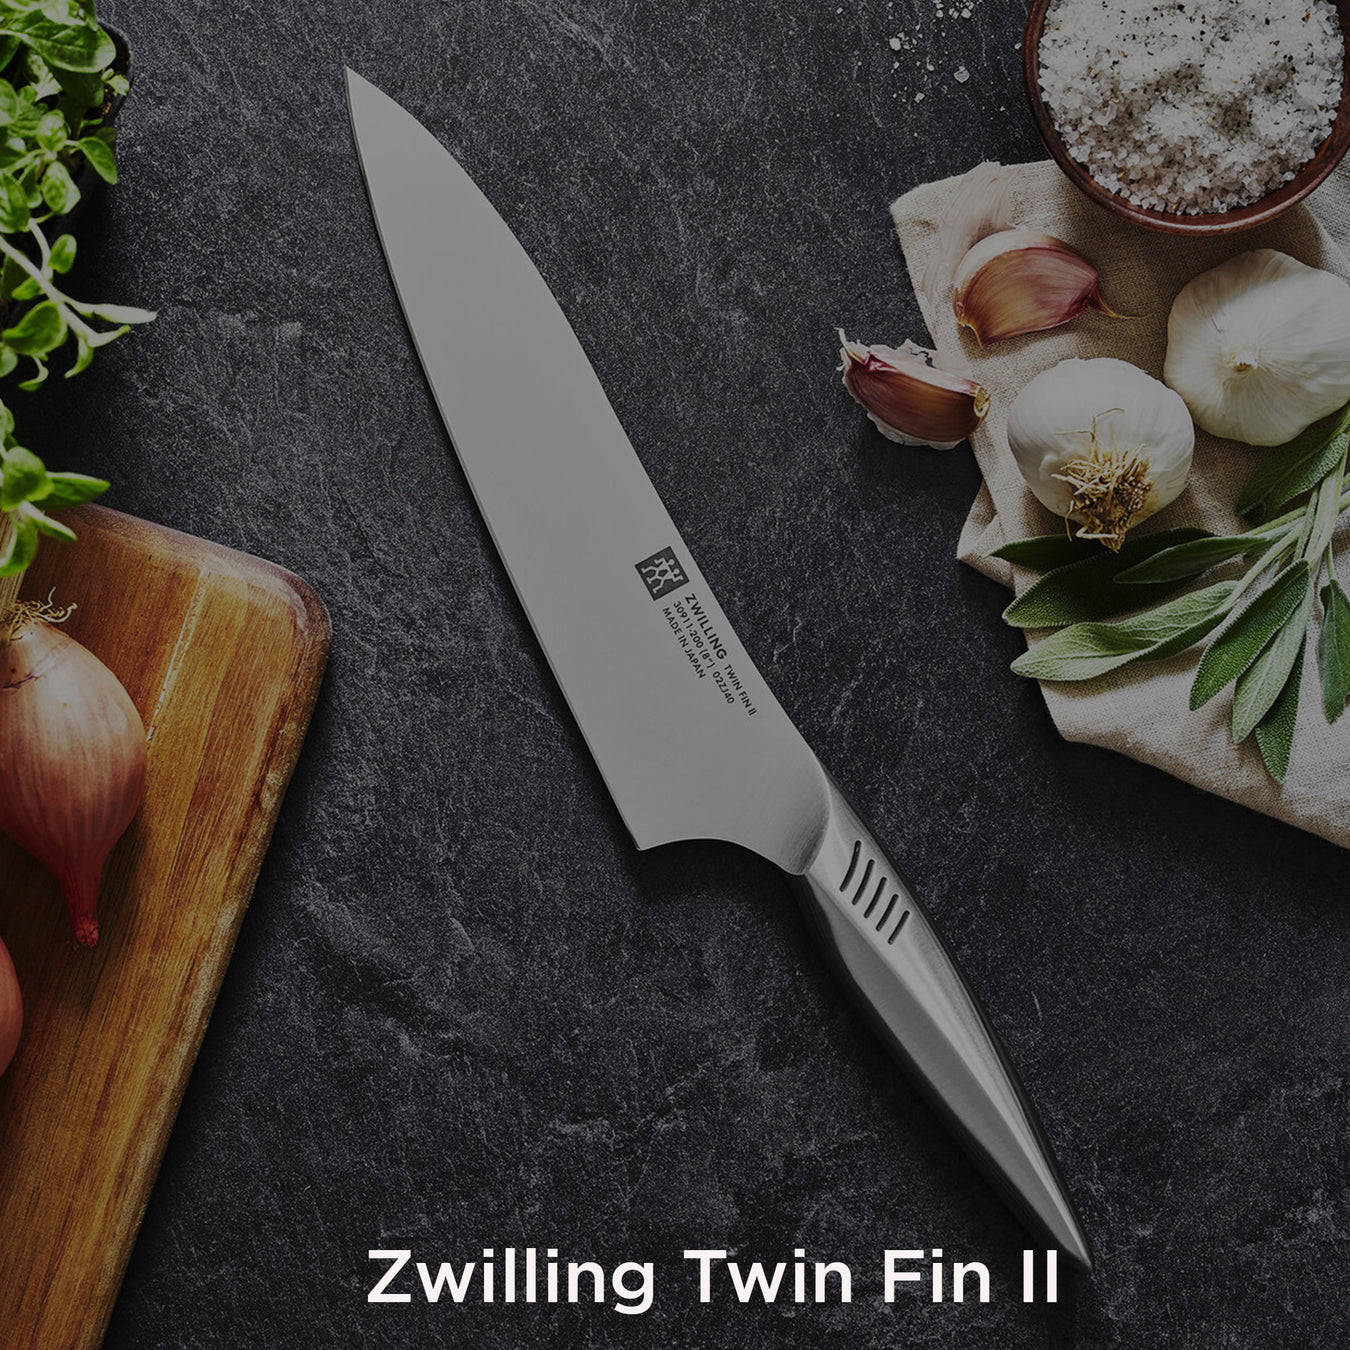 Zwilling Twin Fin II